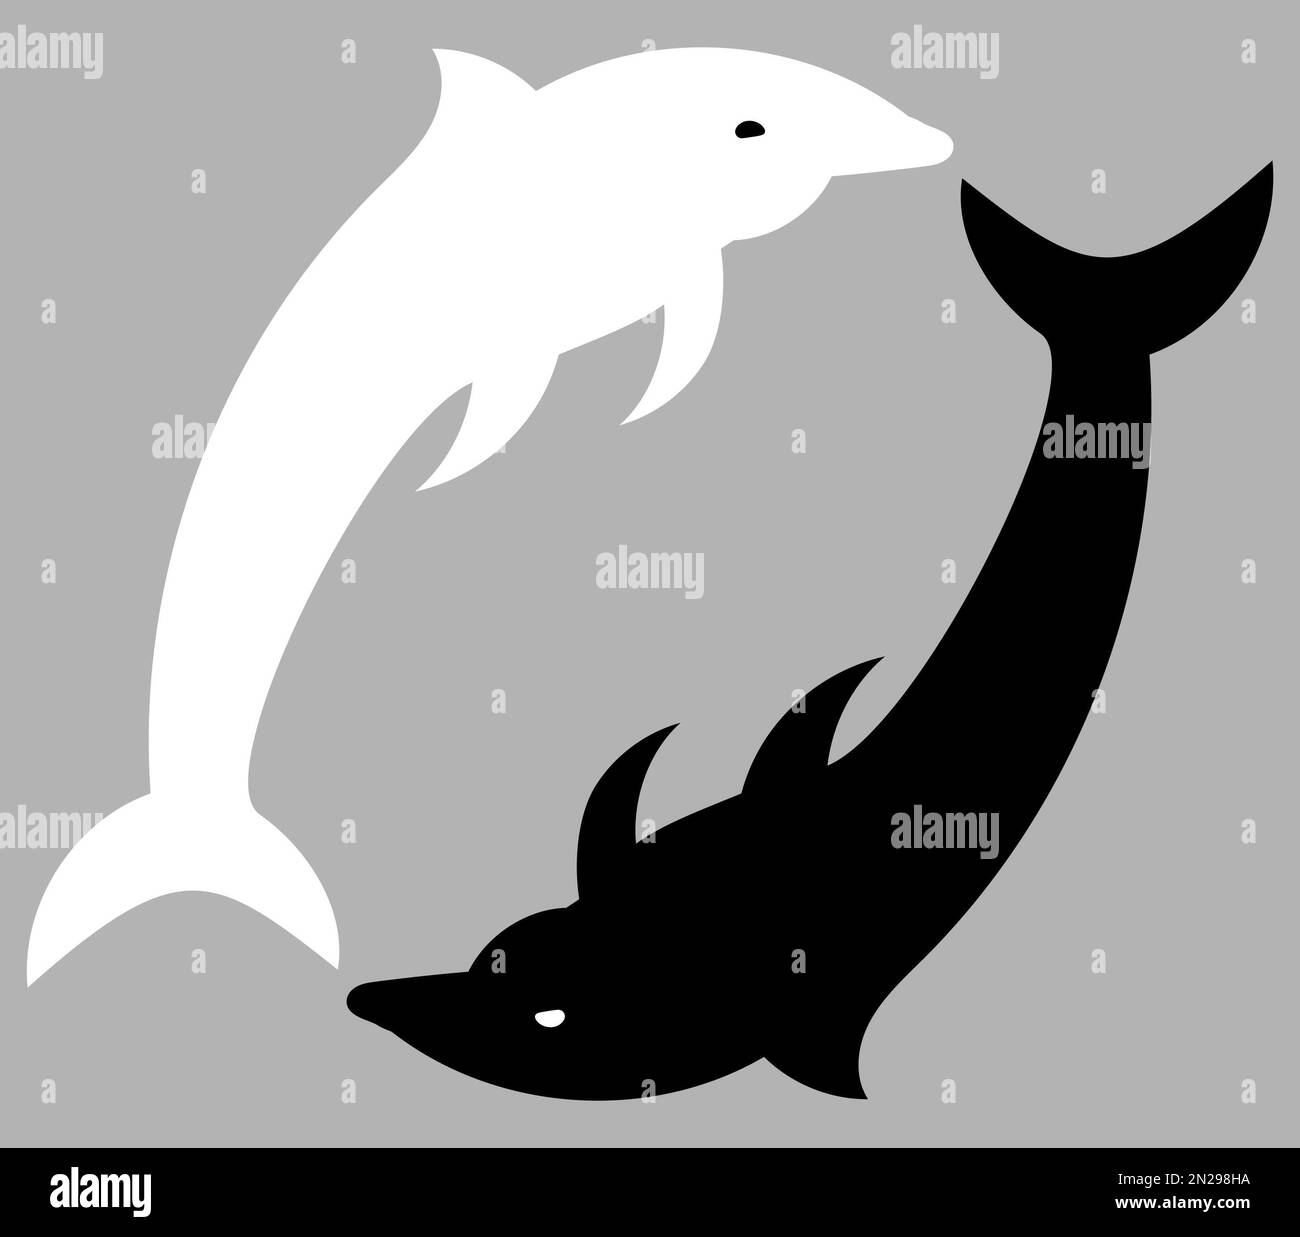 Yin et Yang illustrés en utilisant des dauphins, Yin et Yang signe, art abstrait, noir et blanc, monochrome Banque D'Images